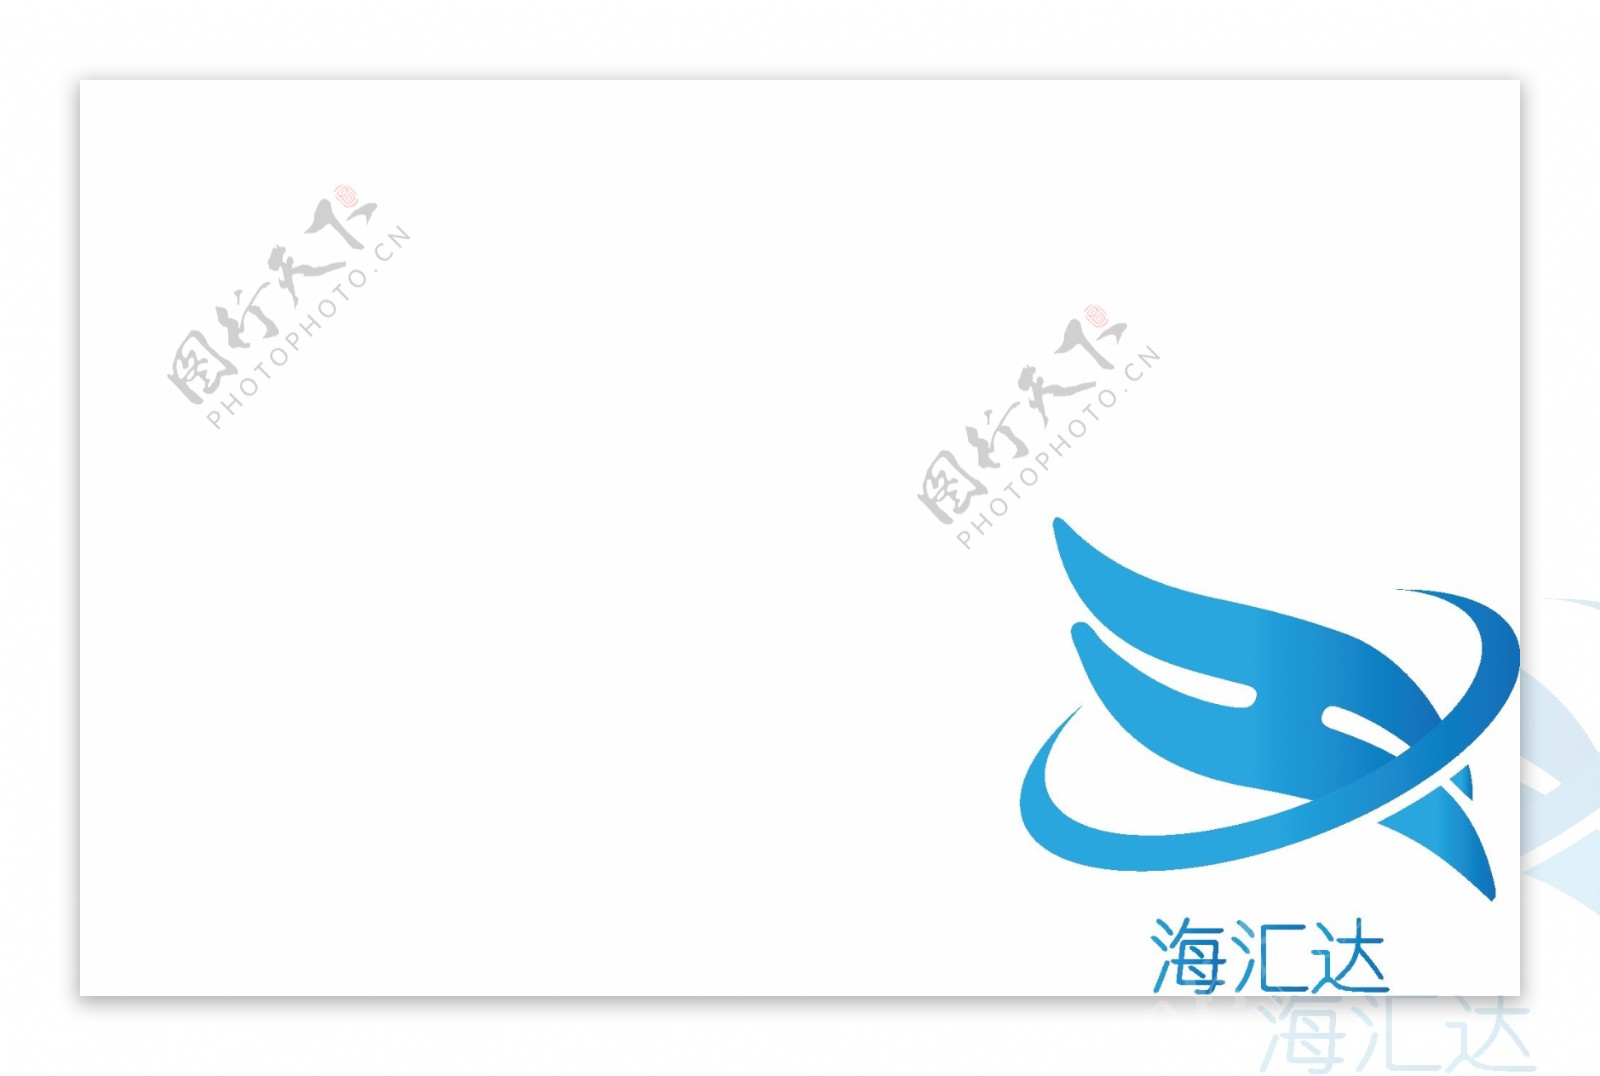 海汇达公司logo